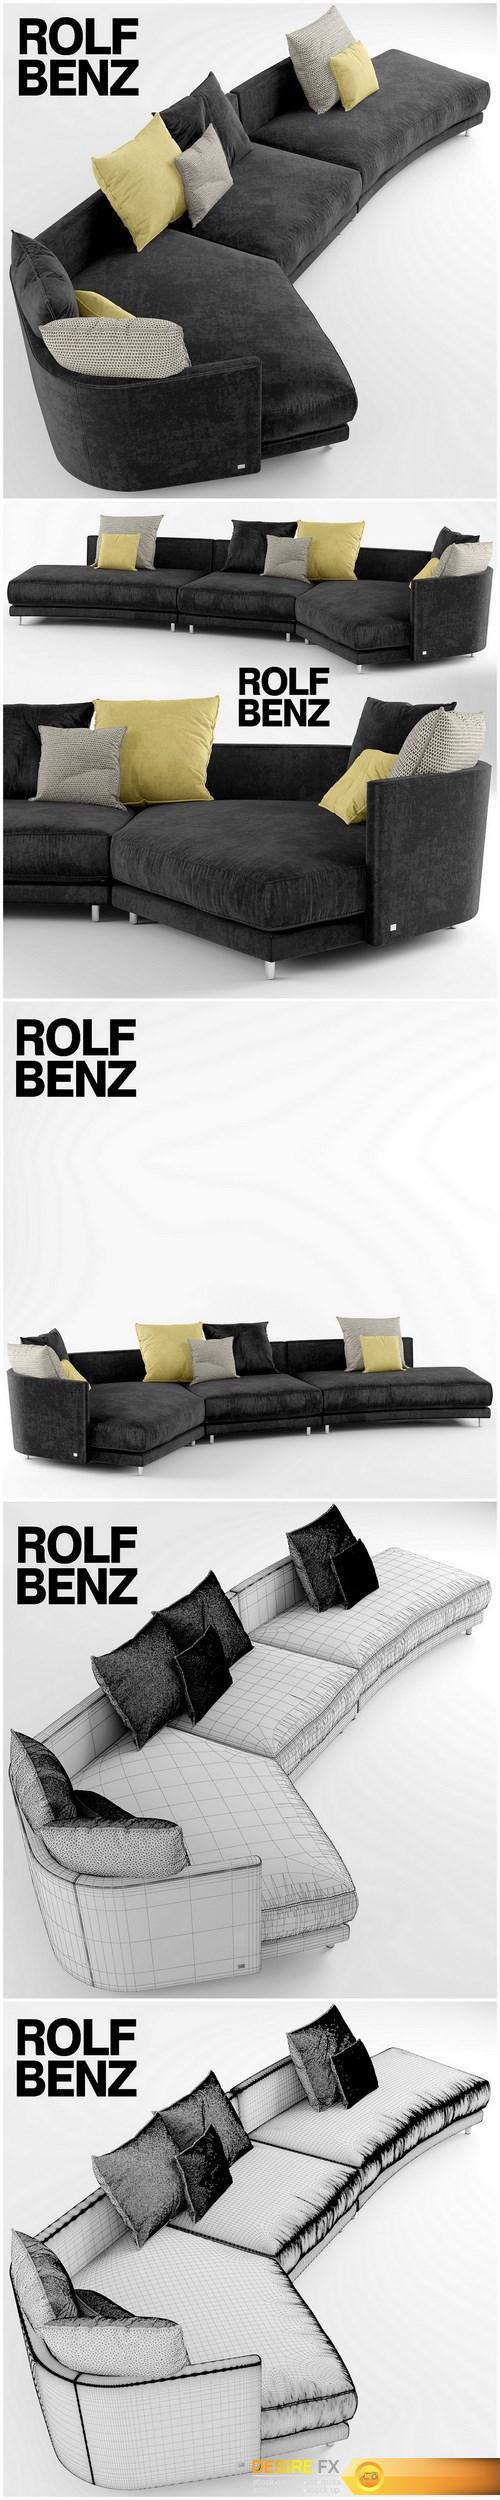 Sofa ROLF BENZ ONDA 3D Model